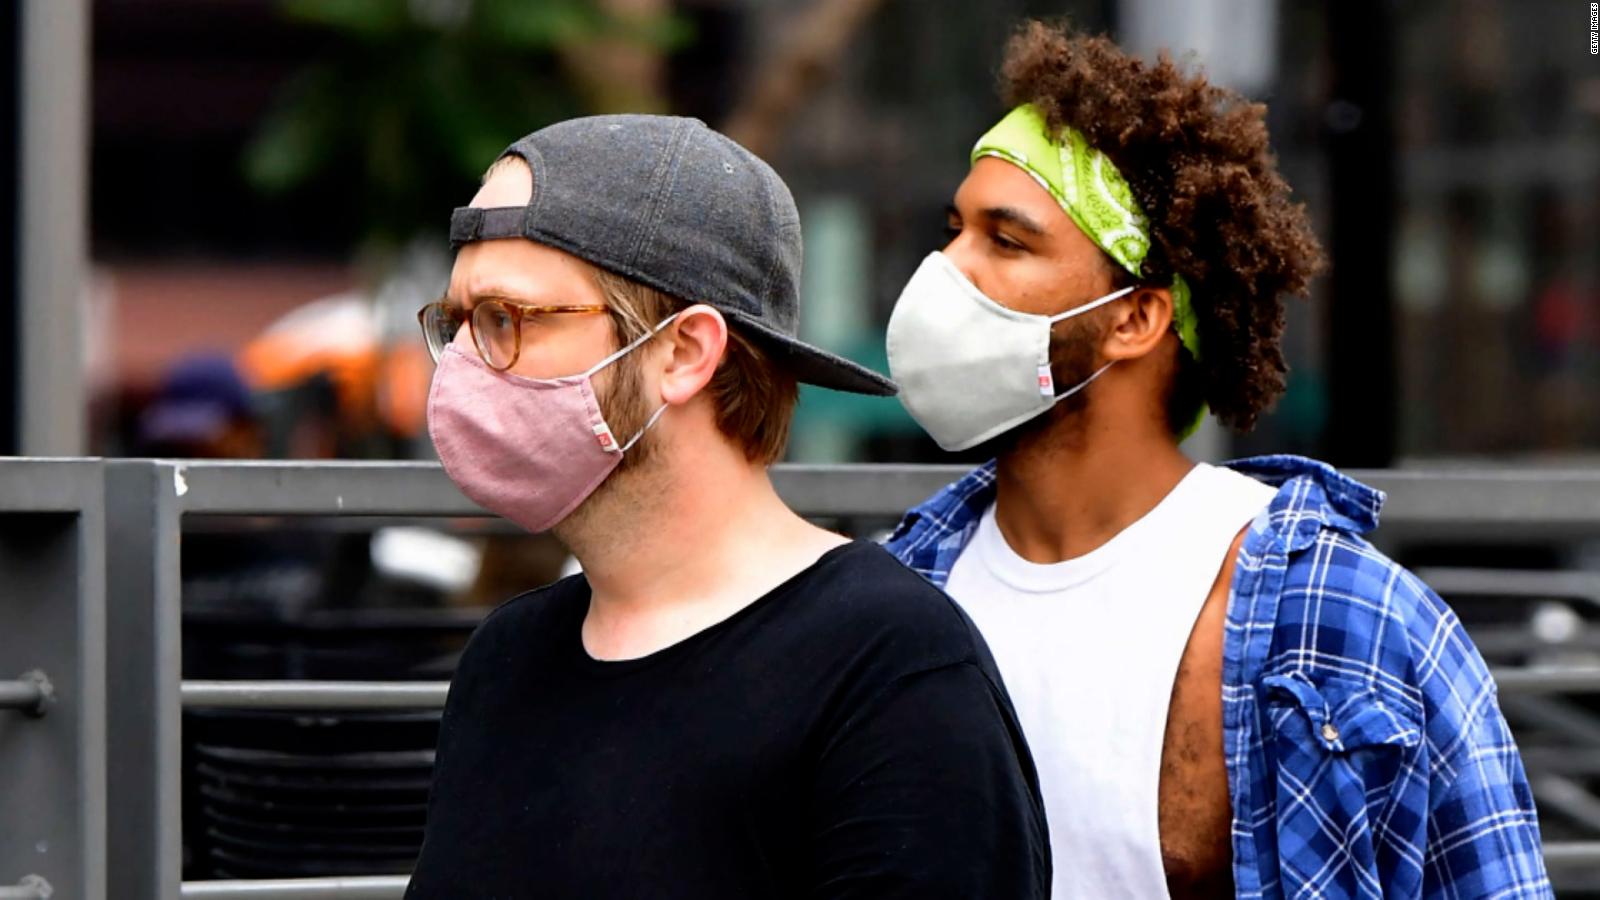 Lo que se revela cuando los estadounidenses se quitan las máscaras